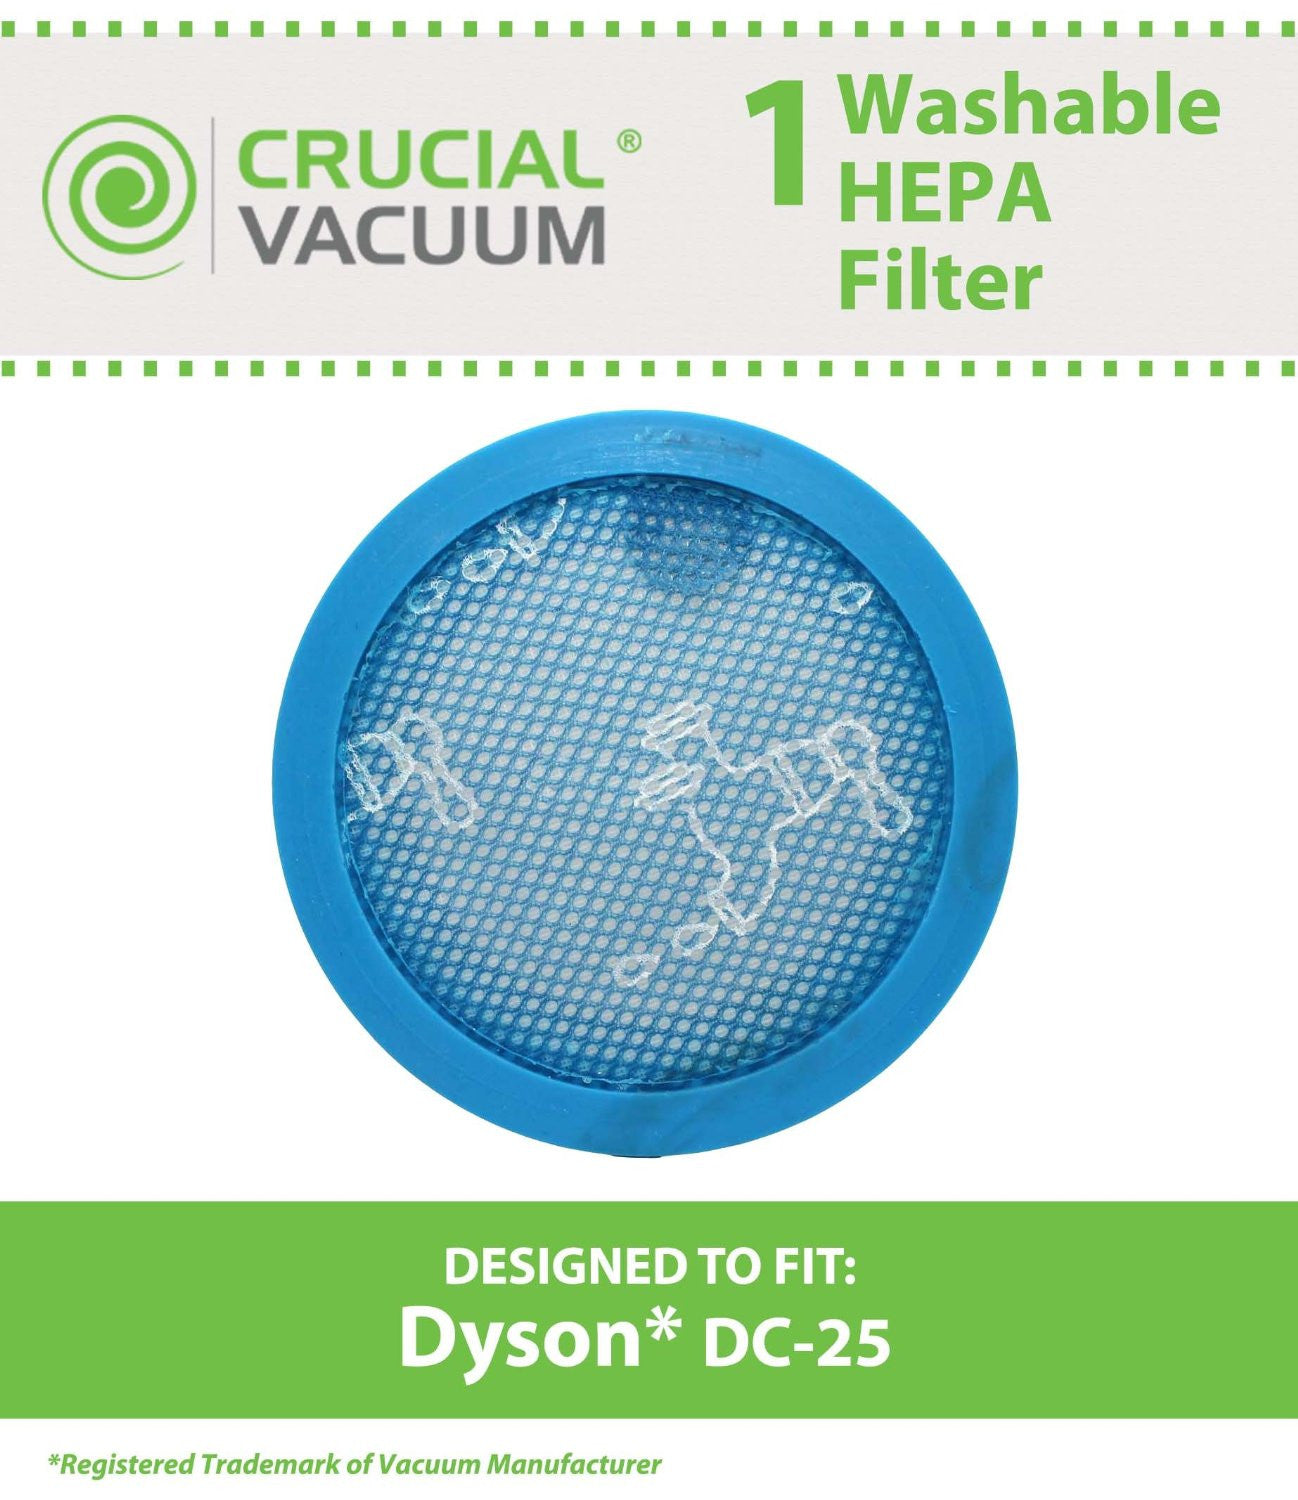 Dyson DC25 Lifetime Washable & Reusable HEPA Vacuum Cleaner Filter, Replaces Dyson Vacuum Part # 914790-01